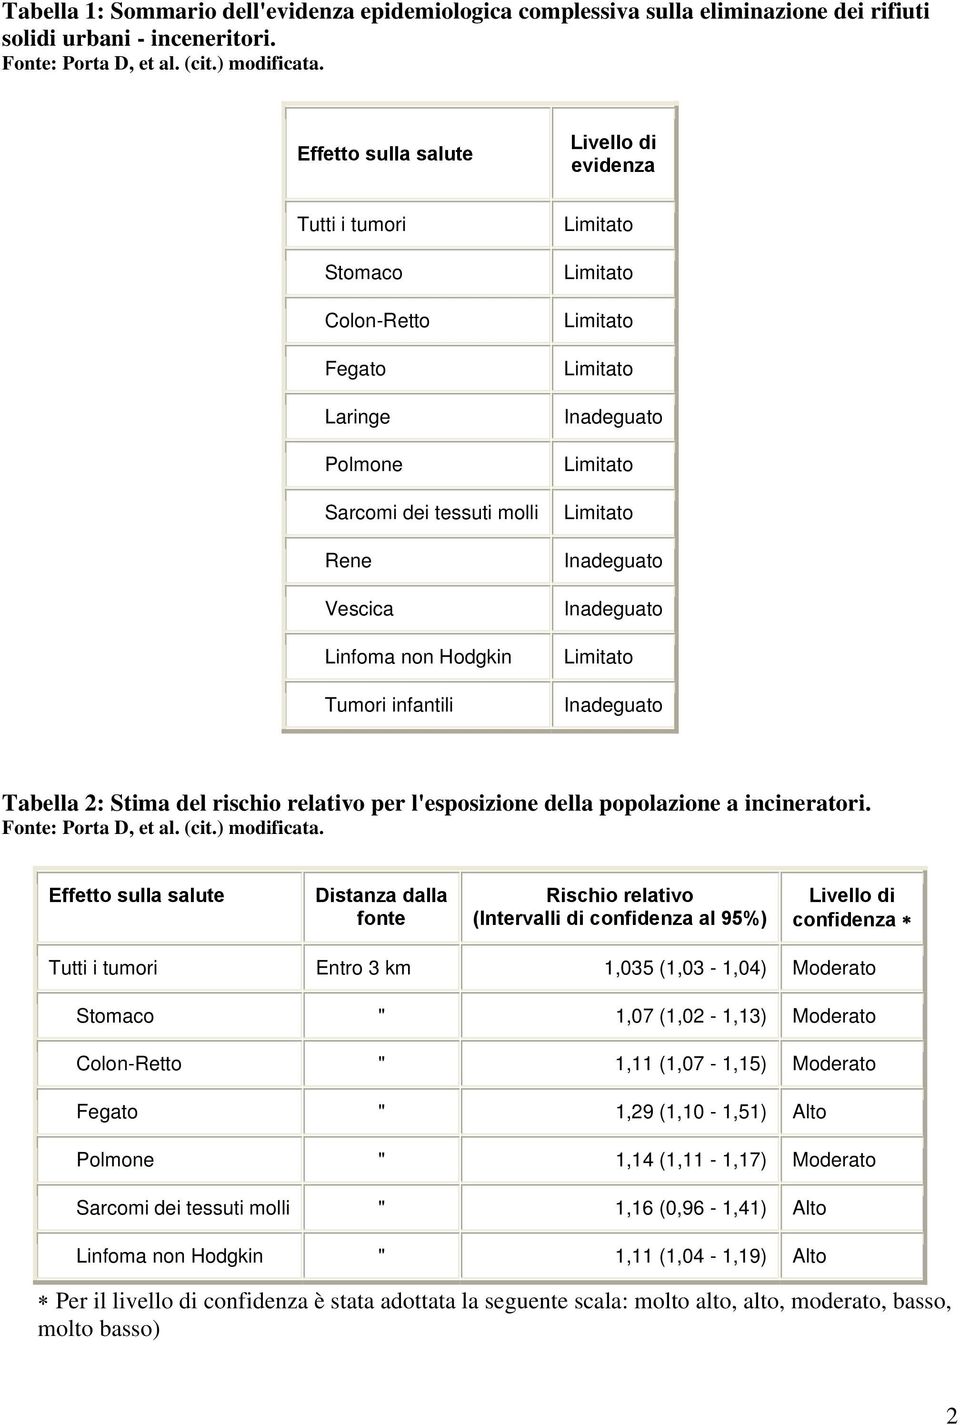 rischio relativo per l'esposizione della popolazione a incineratori. Fonte: Porta D, et al. (cit.) modificata.